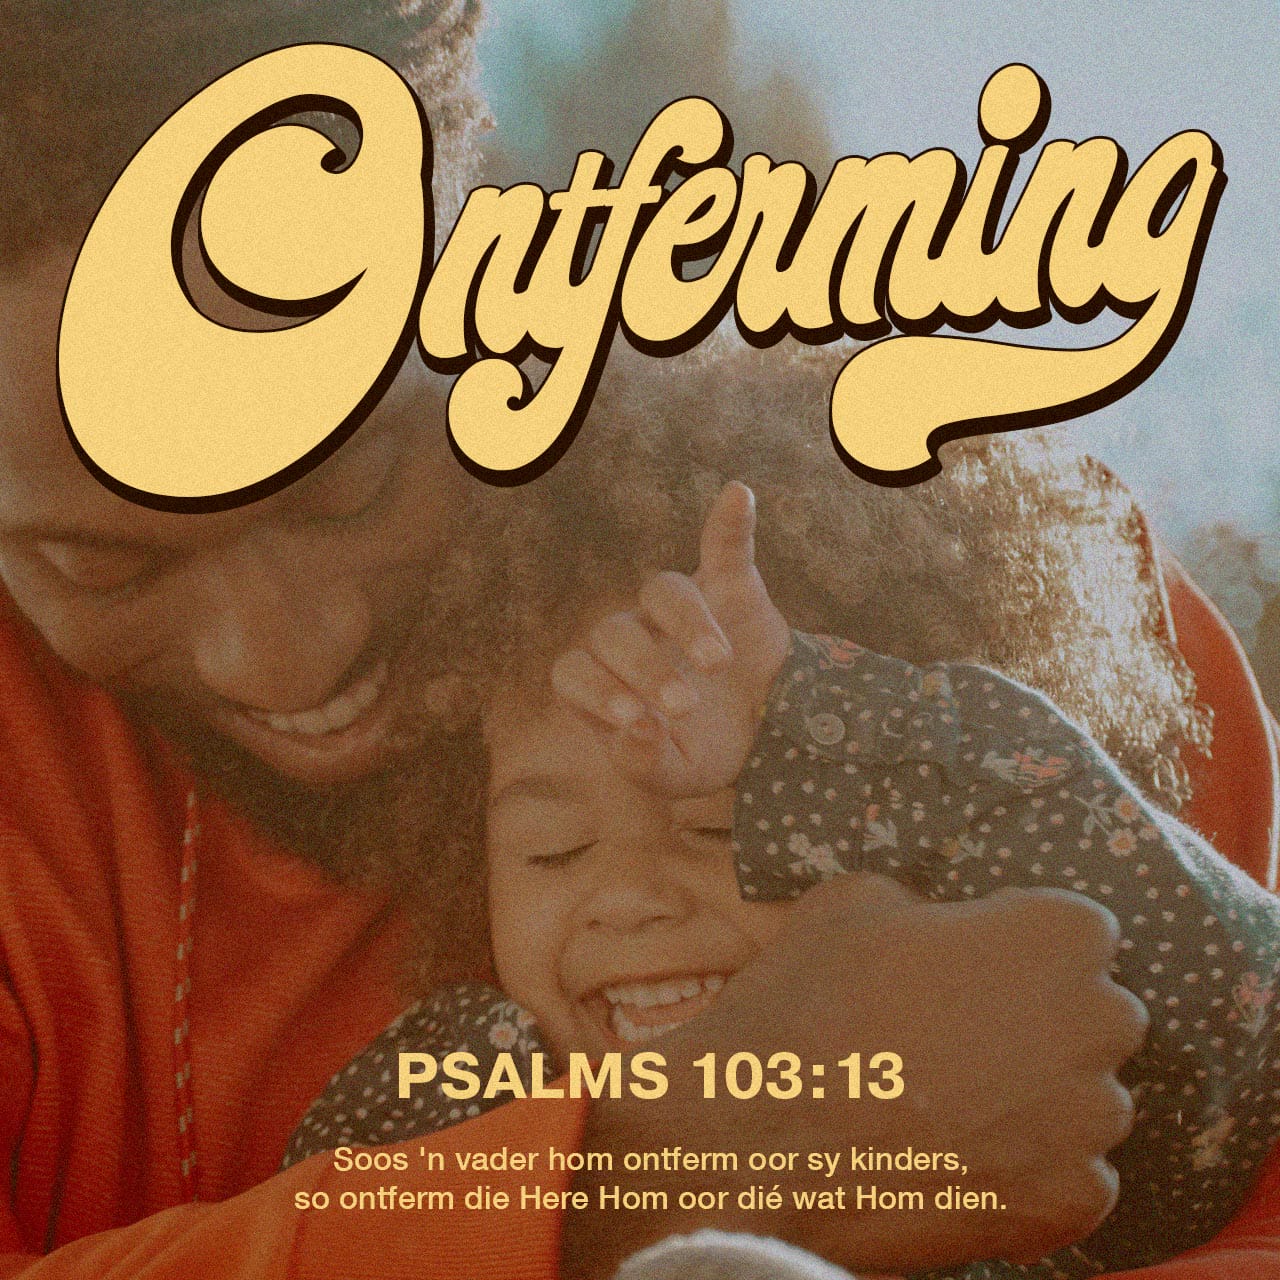 Versbeeld: "Soos 'n vader hom ontferm oor sy kinders, so ontferm die Here Hom oor dié wat Hom dien" — Psalm 103:13.